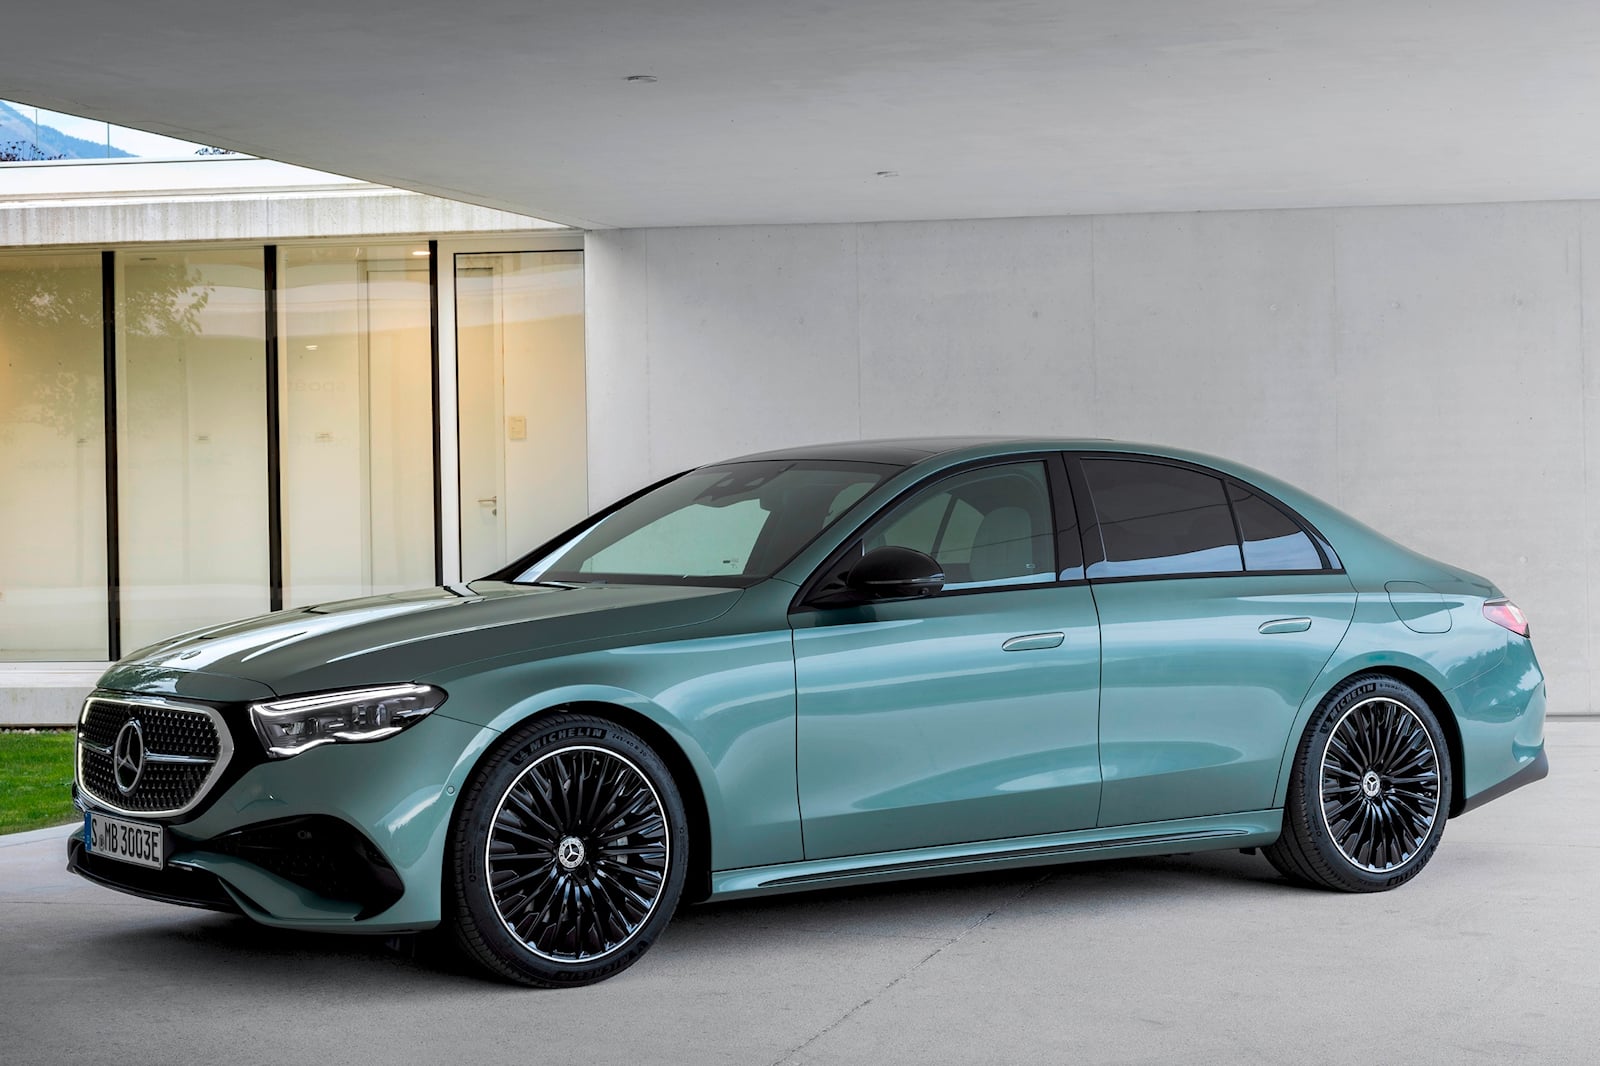 Mercedes-Benz S-Class Price, Images, colours, Reviews & Specs